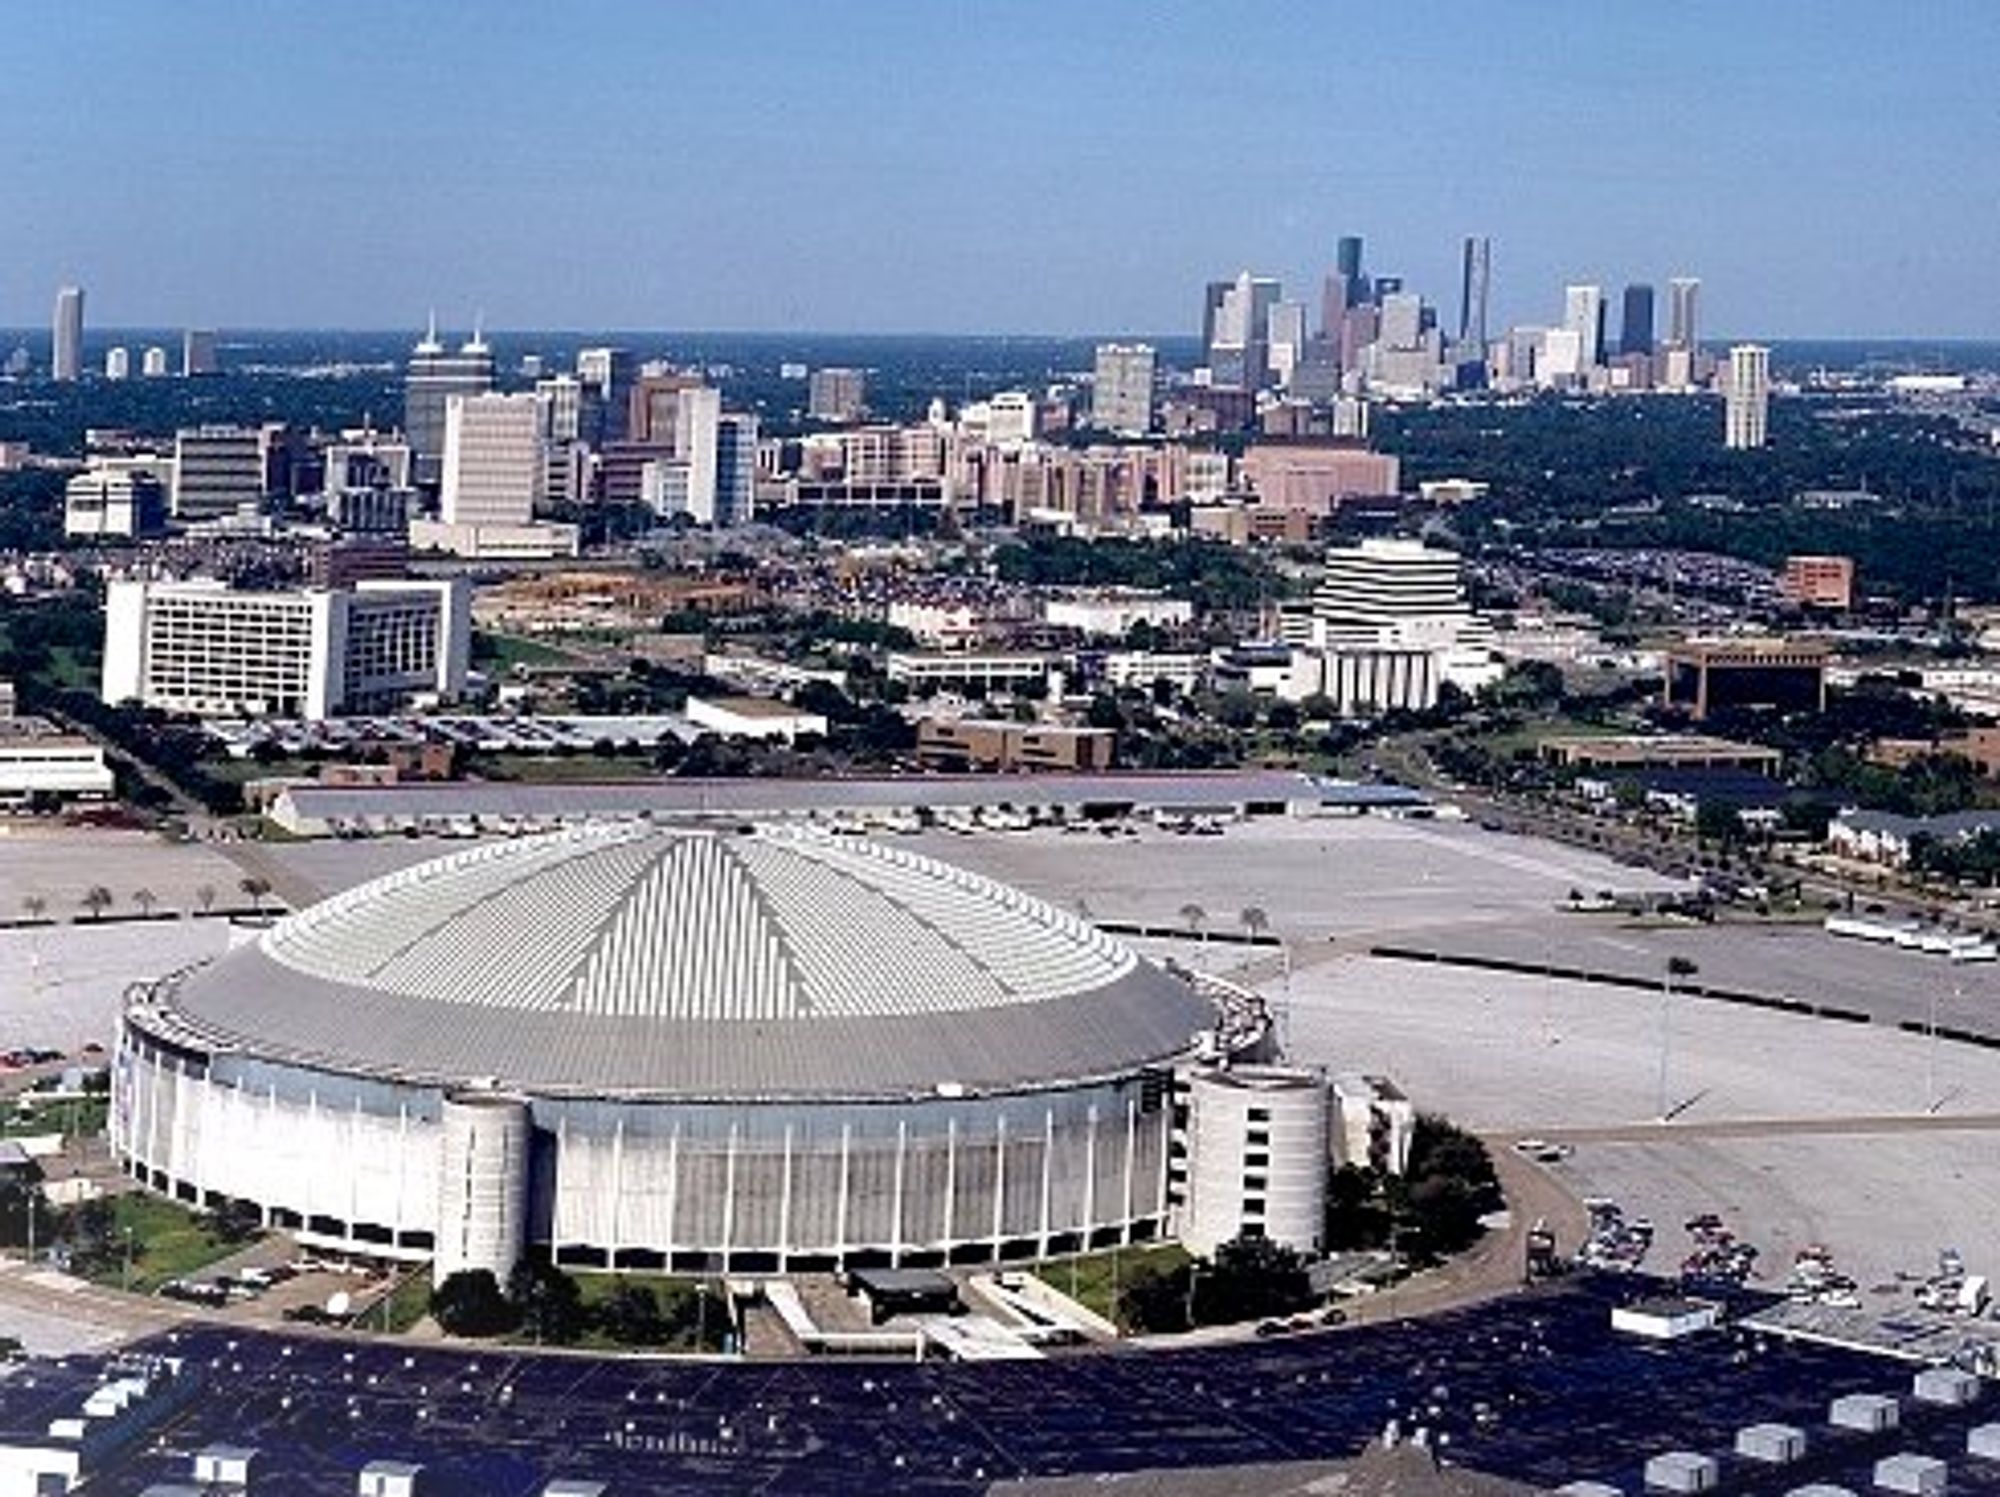 Astrodome 1980